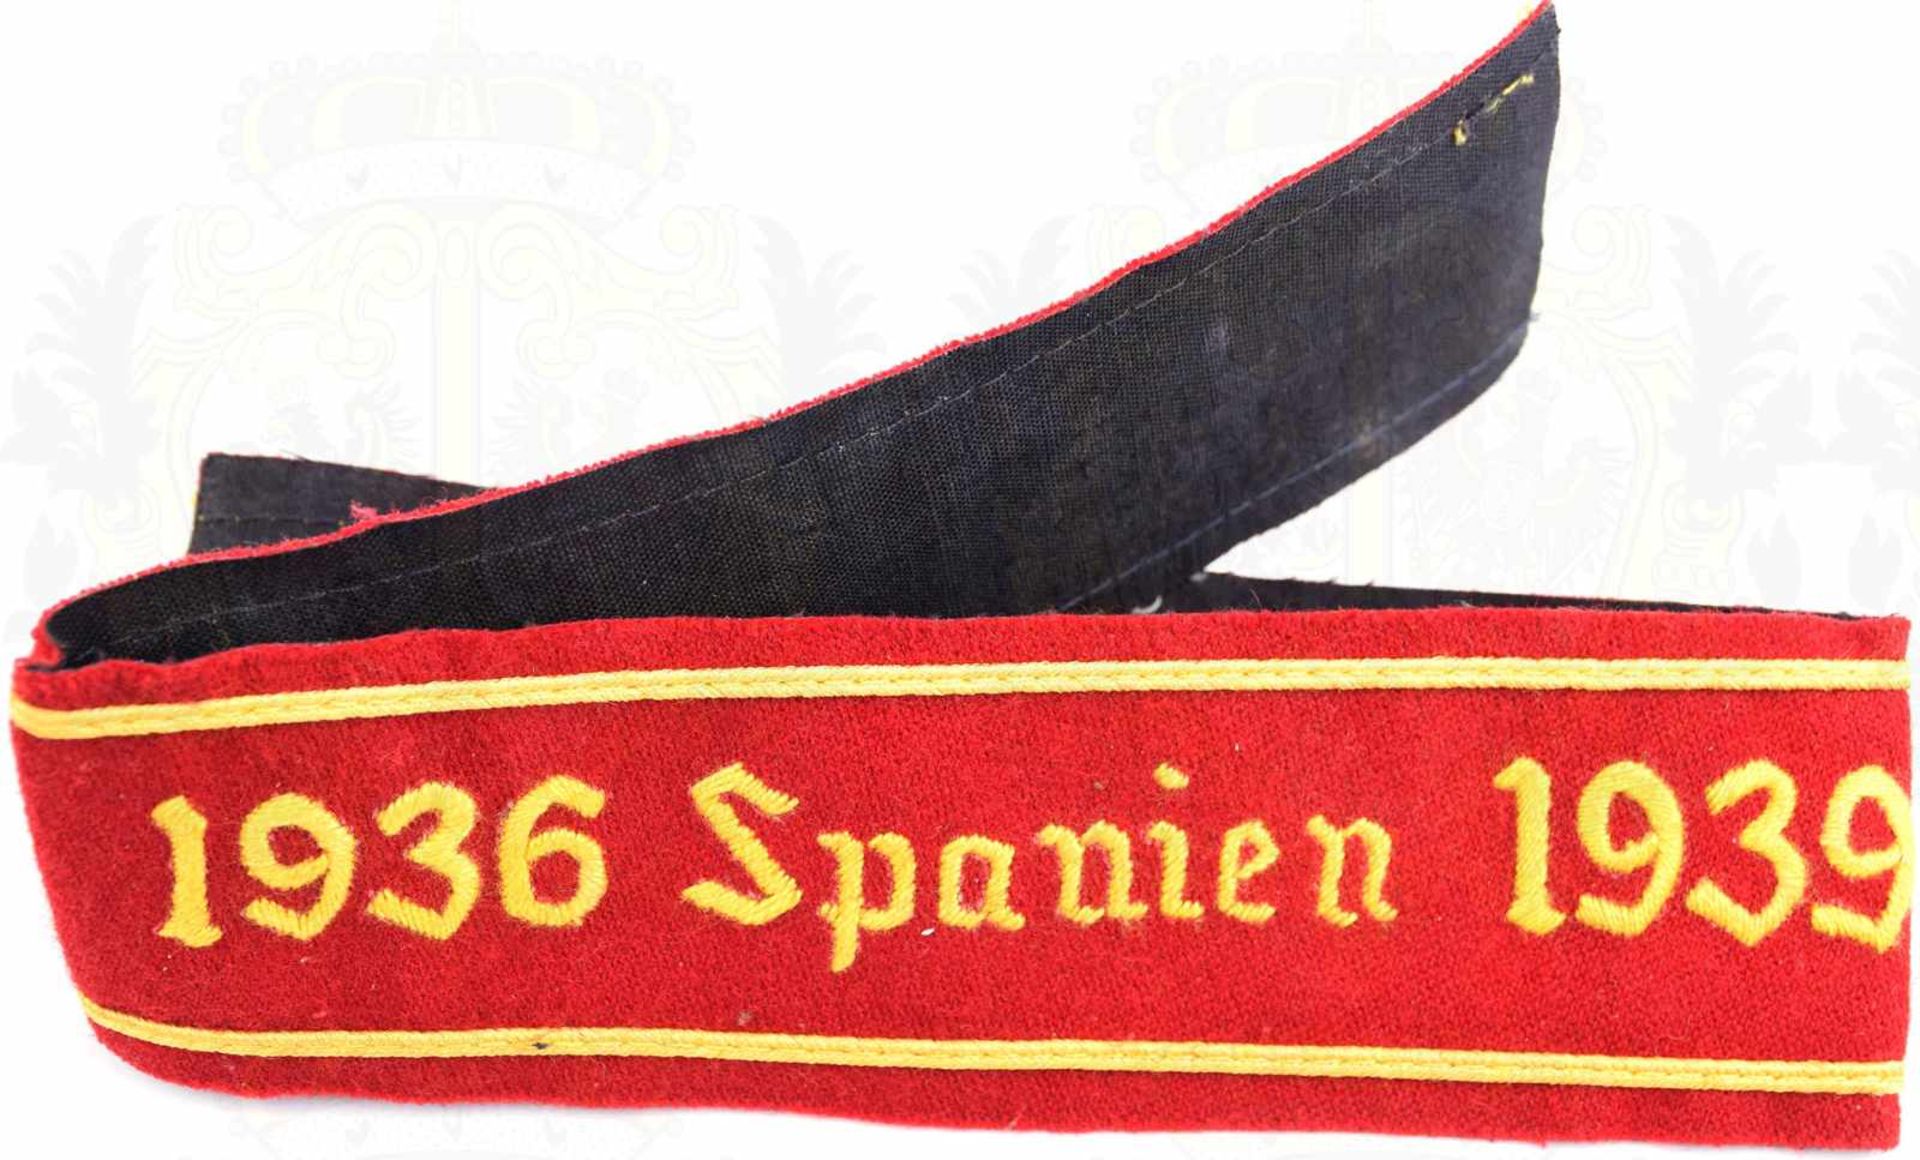 ÄRMELBAND „1936 SPANIEN 1939“, Sammleranfertigung, dunkelrotes Tuch, maschinen-gestickter Text, 2